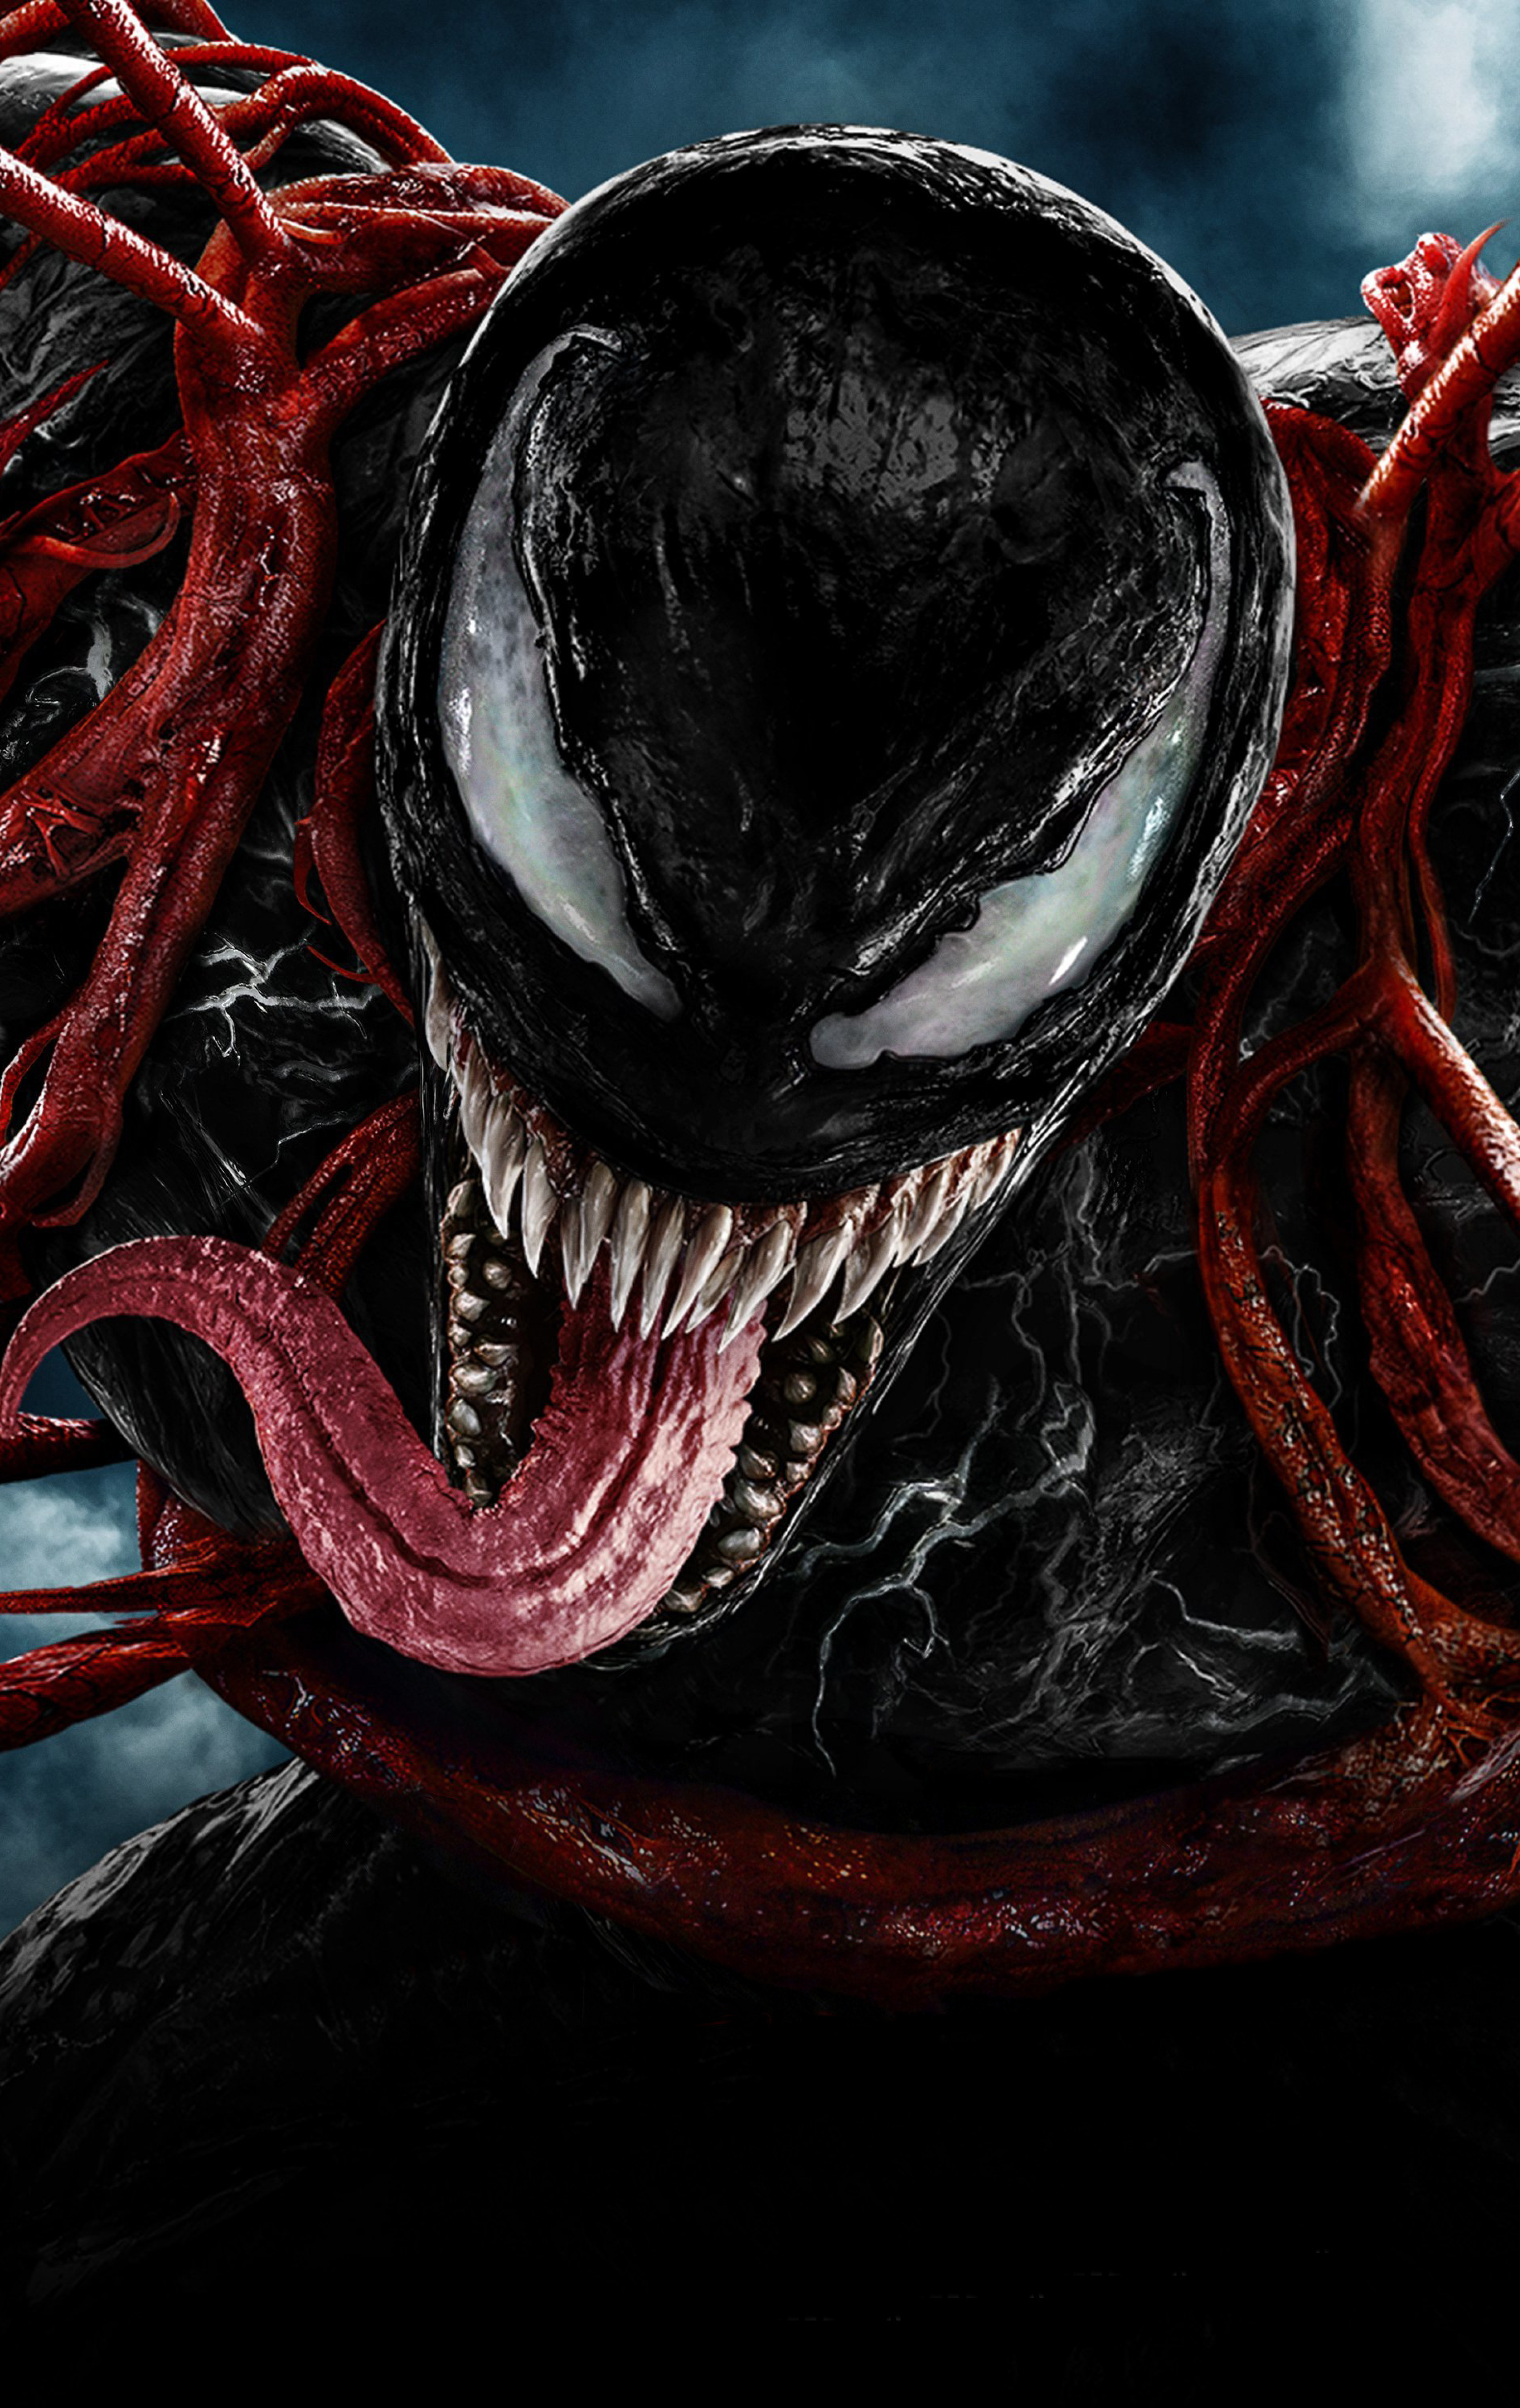 4K Ultra HD Venom Wallpapers - Top Những Hình Ảnh Đẹp